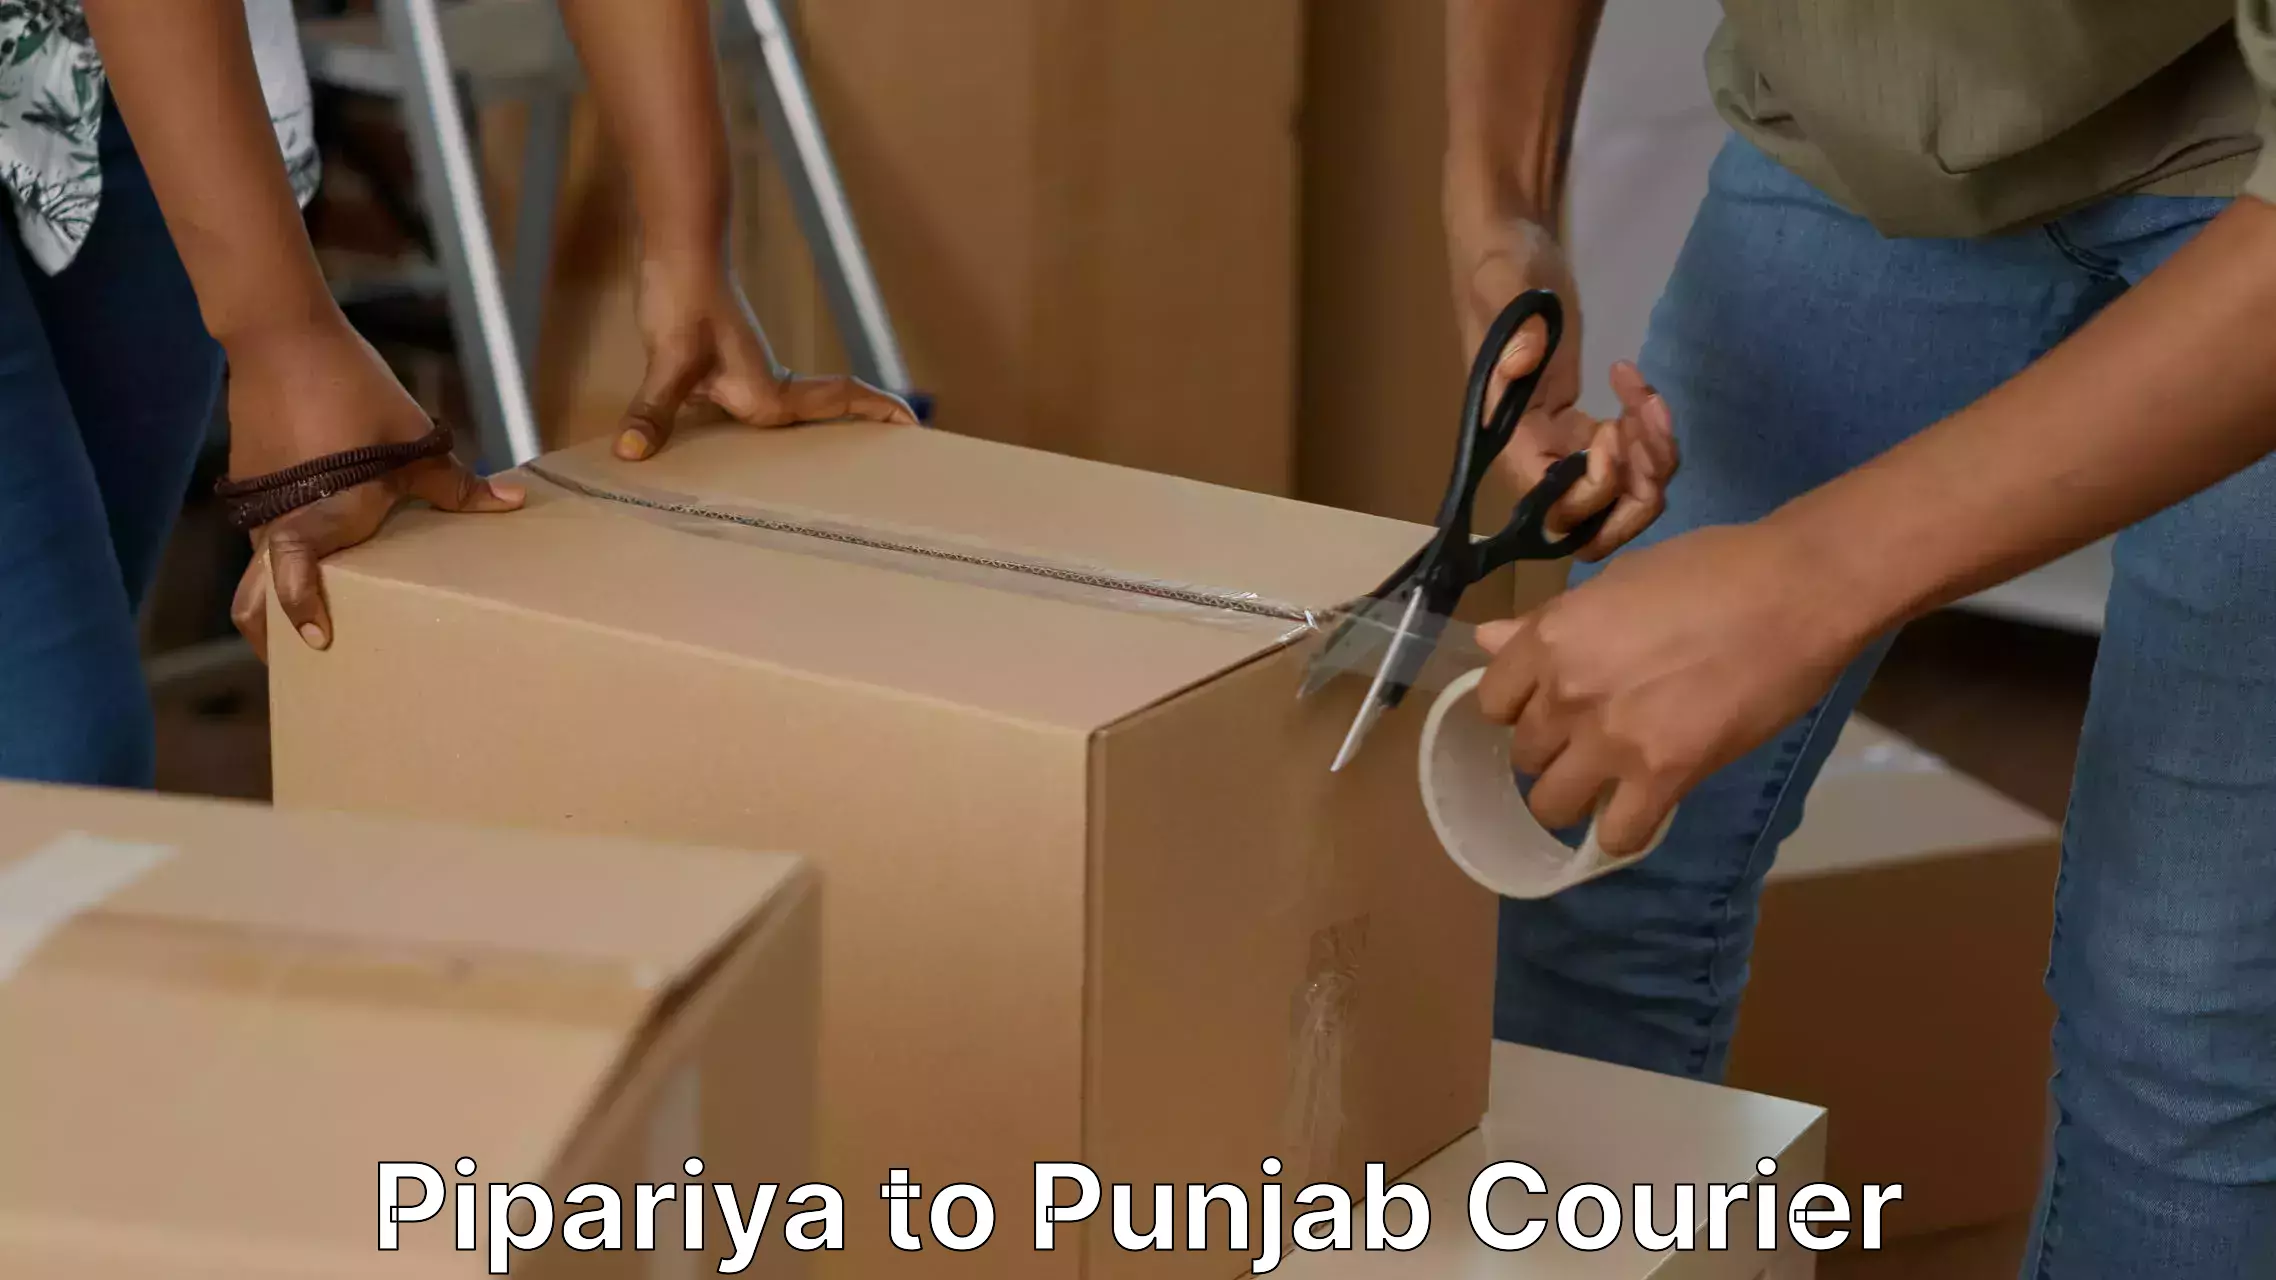 Trusted furniture transport in Pipariya to Punjab